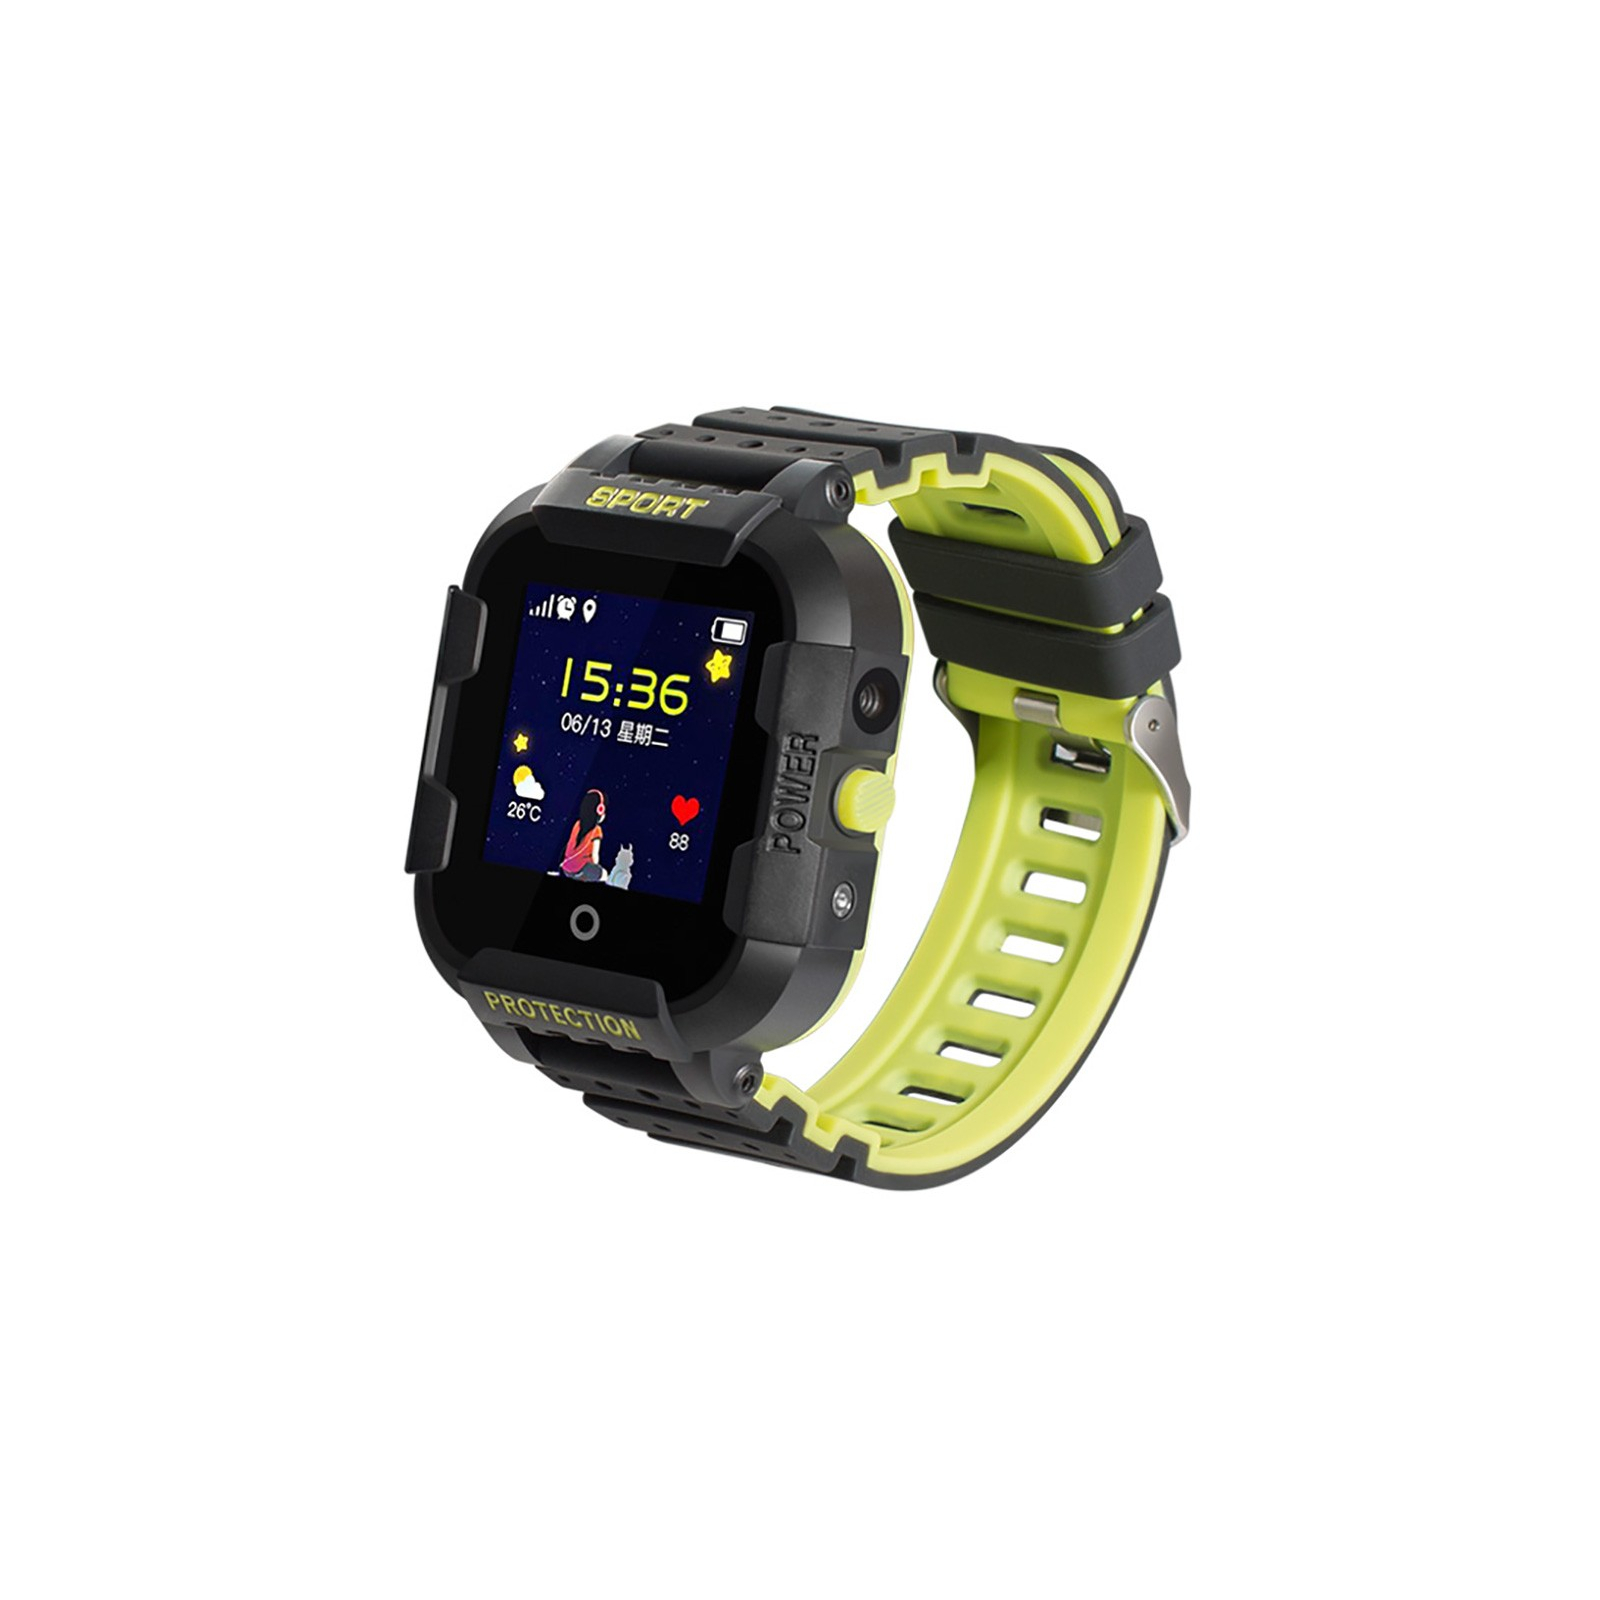 Смарт-часы UWatch KT03 Kid sport smart watch Black (F_86973)